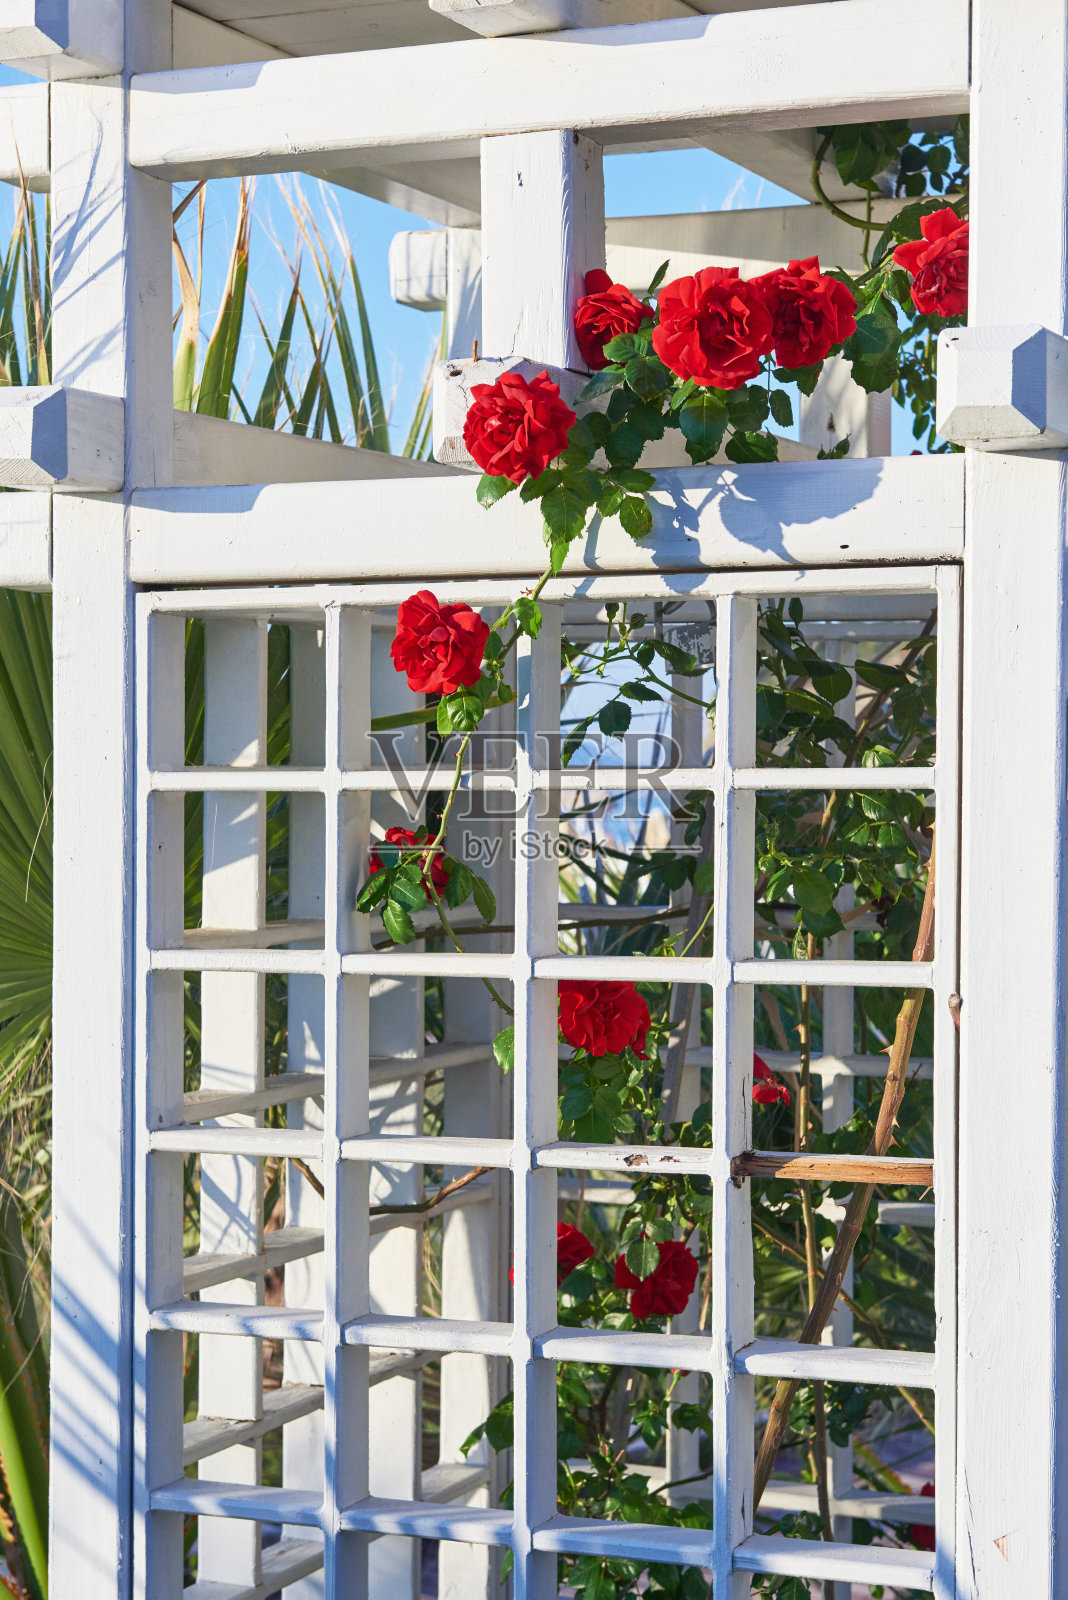 花园里的红玫瑰丛在夏天会出现照片摄影图片